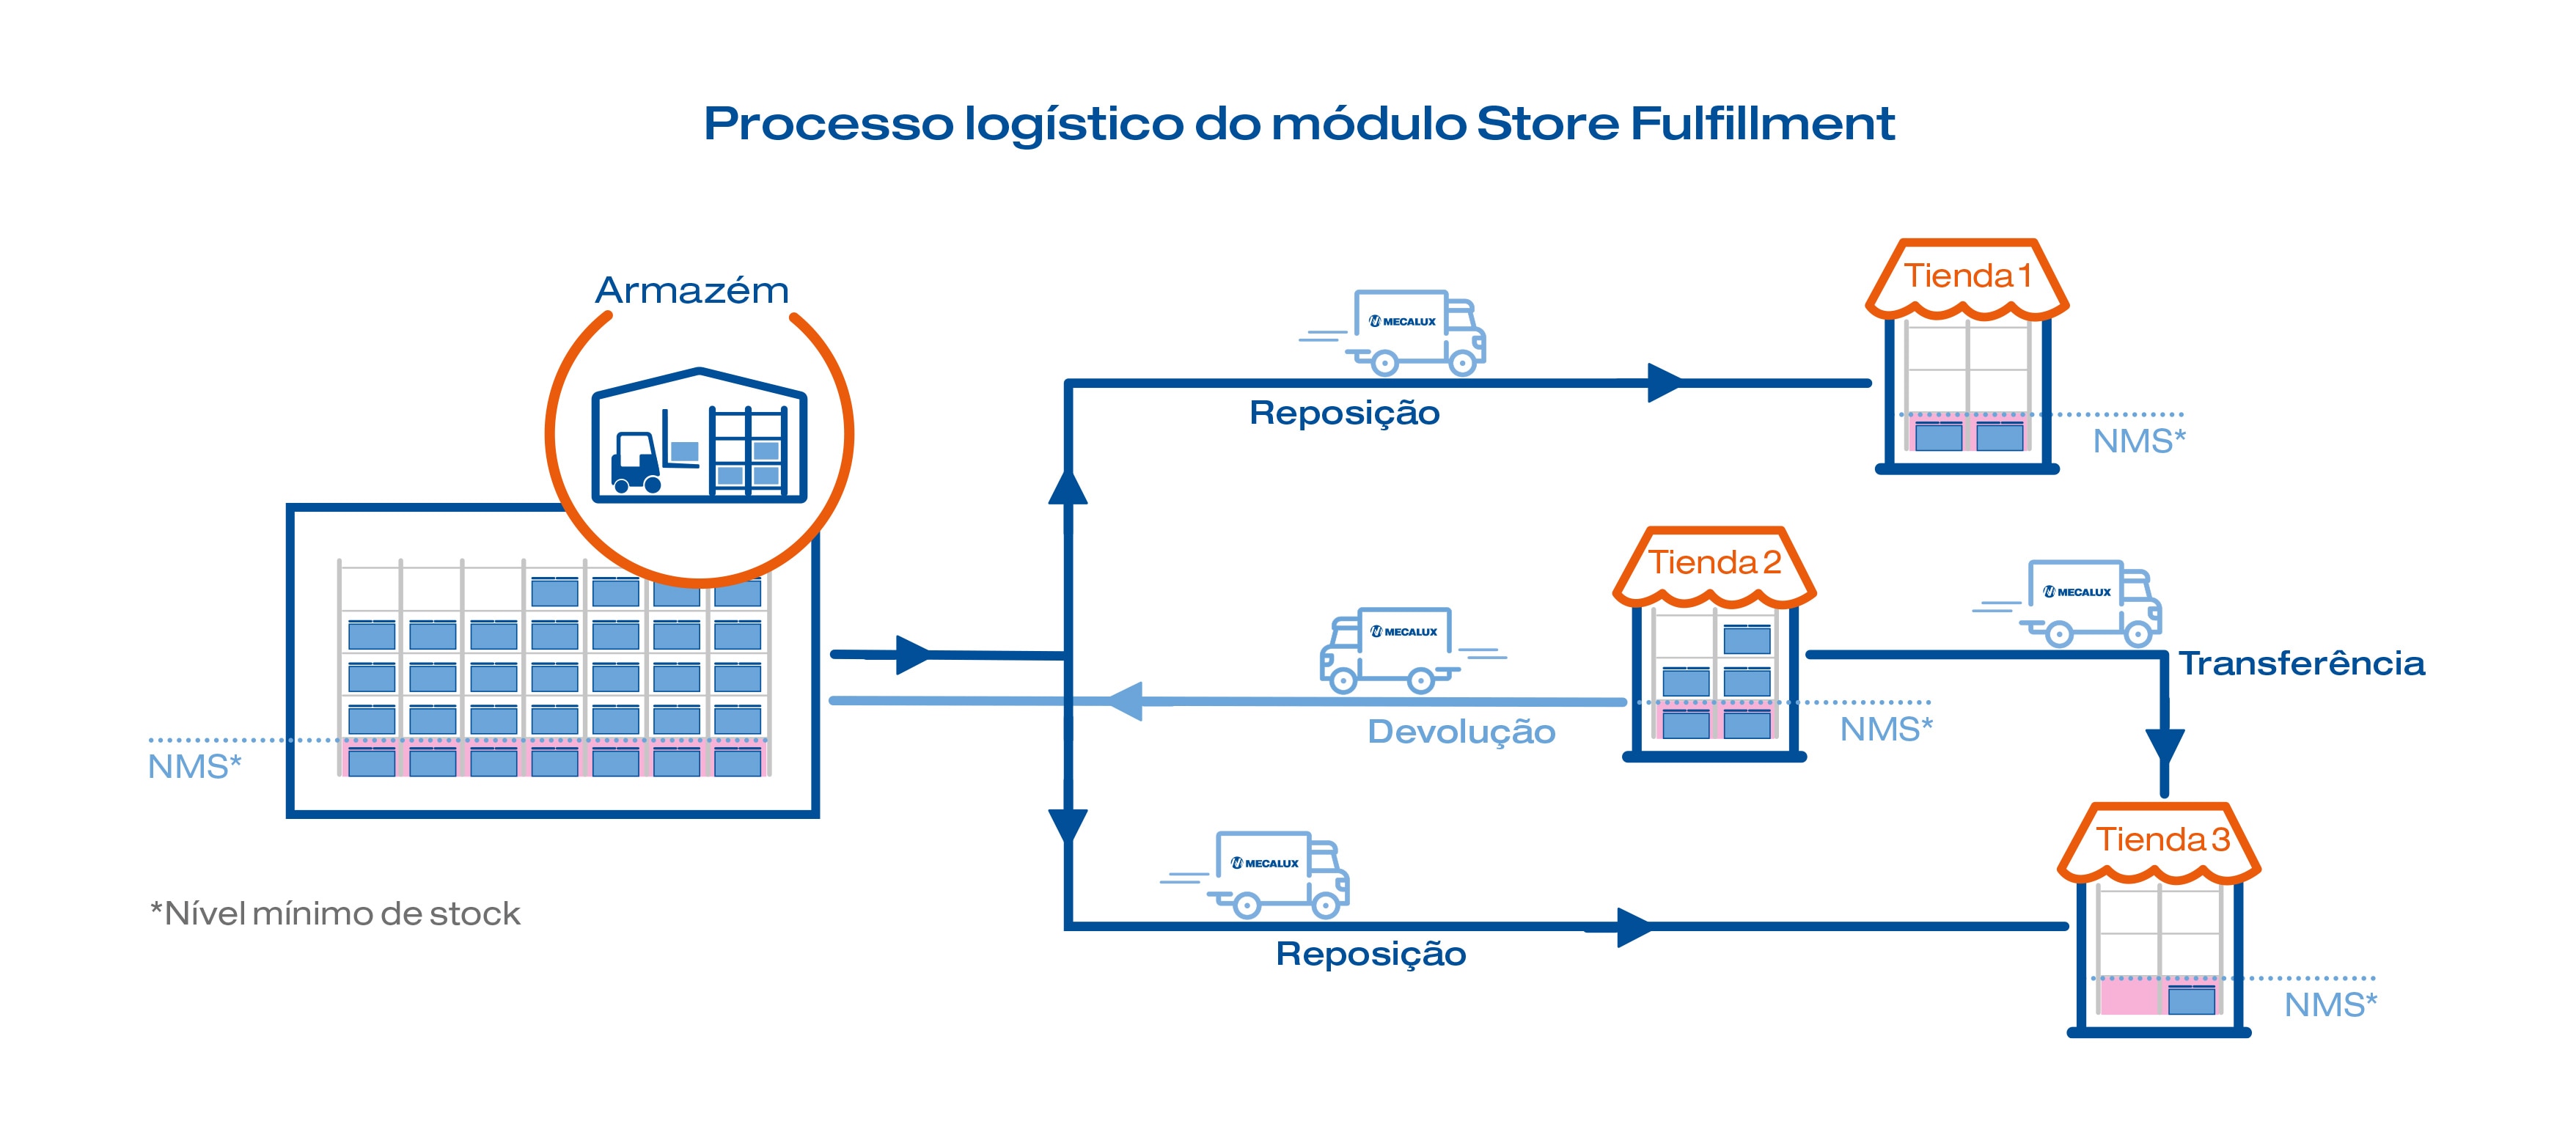 Processo logístico do módulo Store Fulfillment